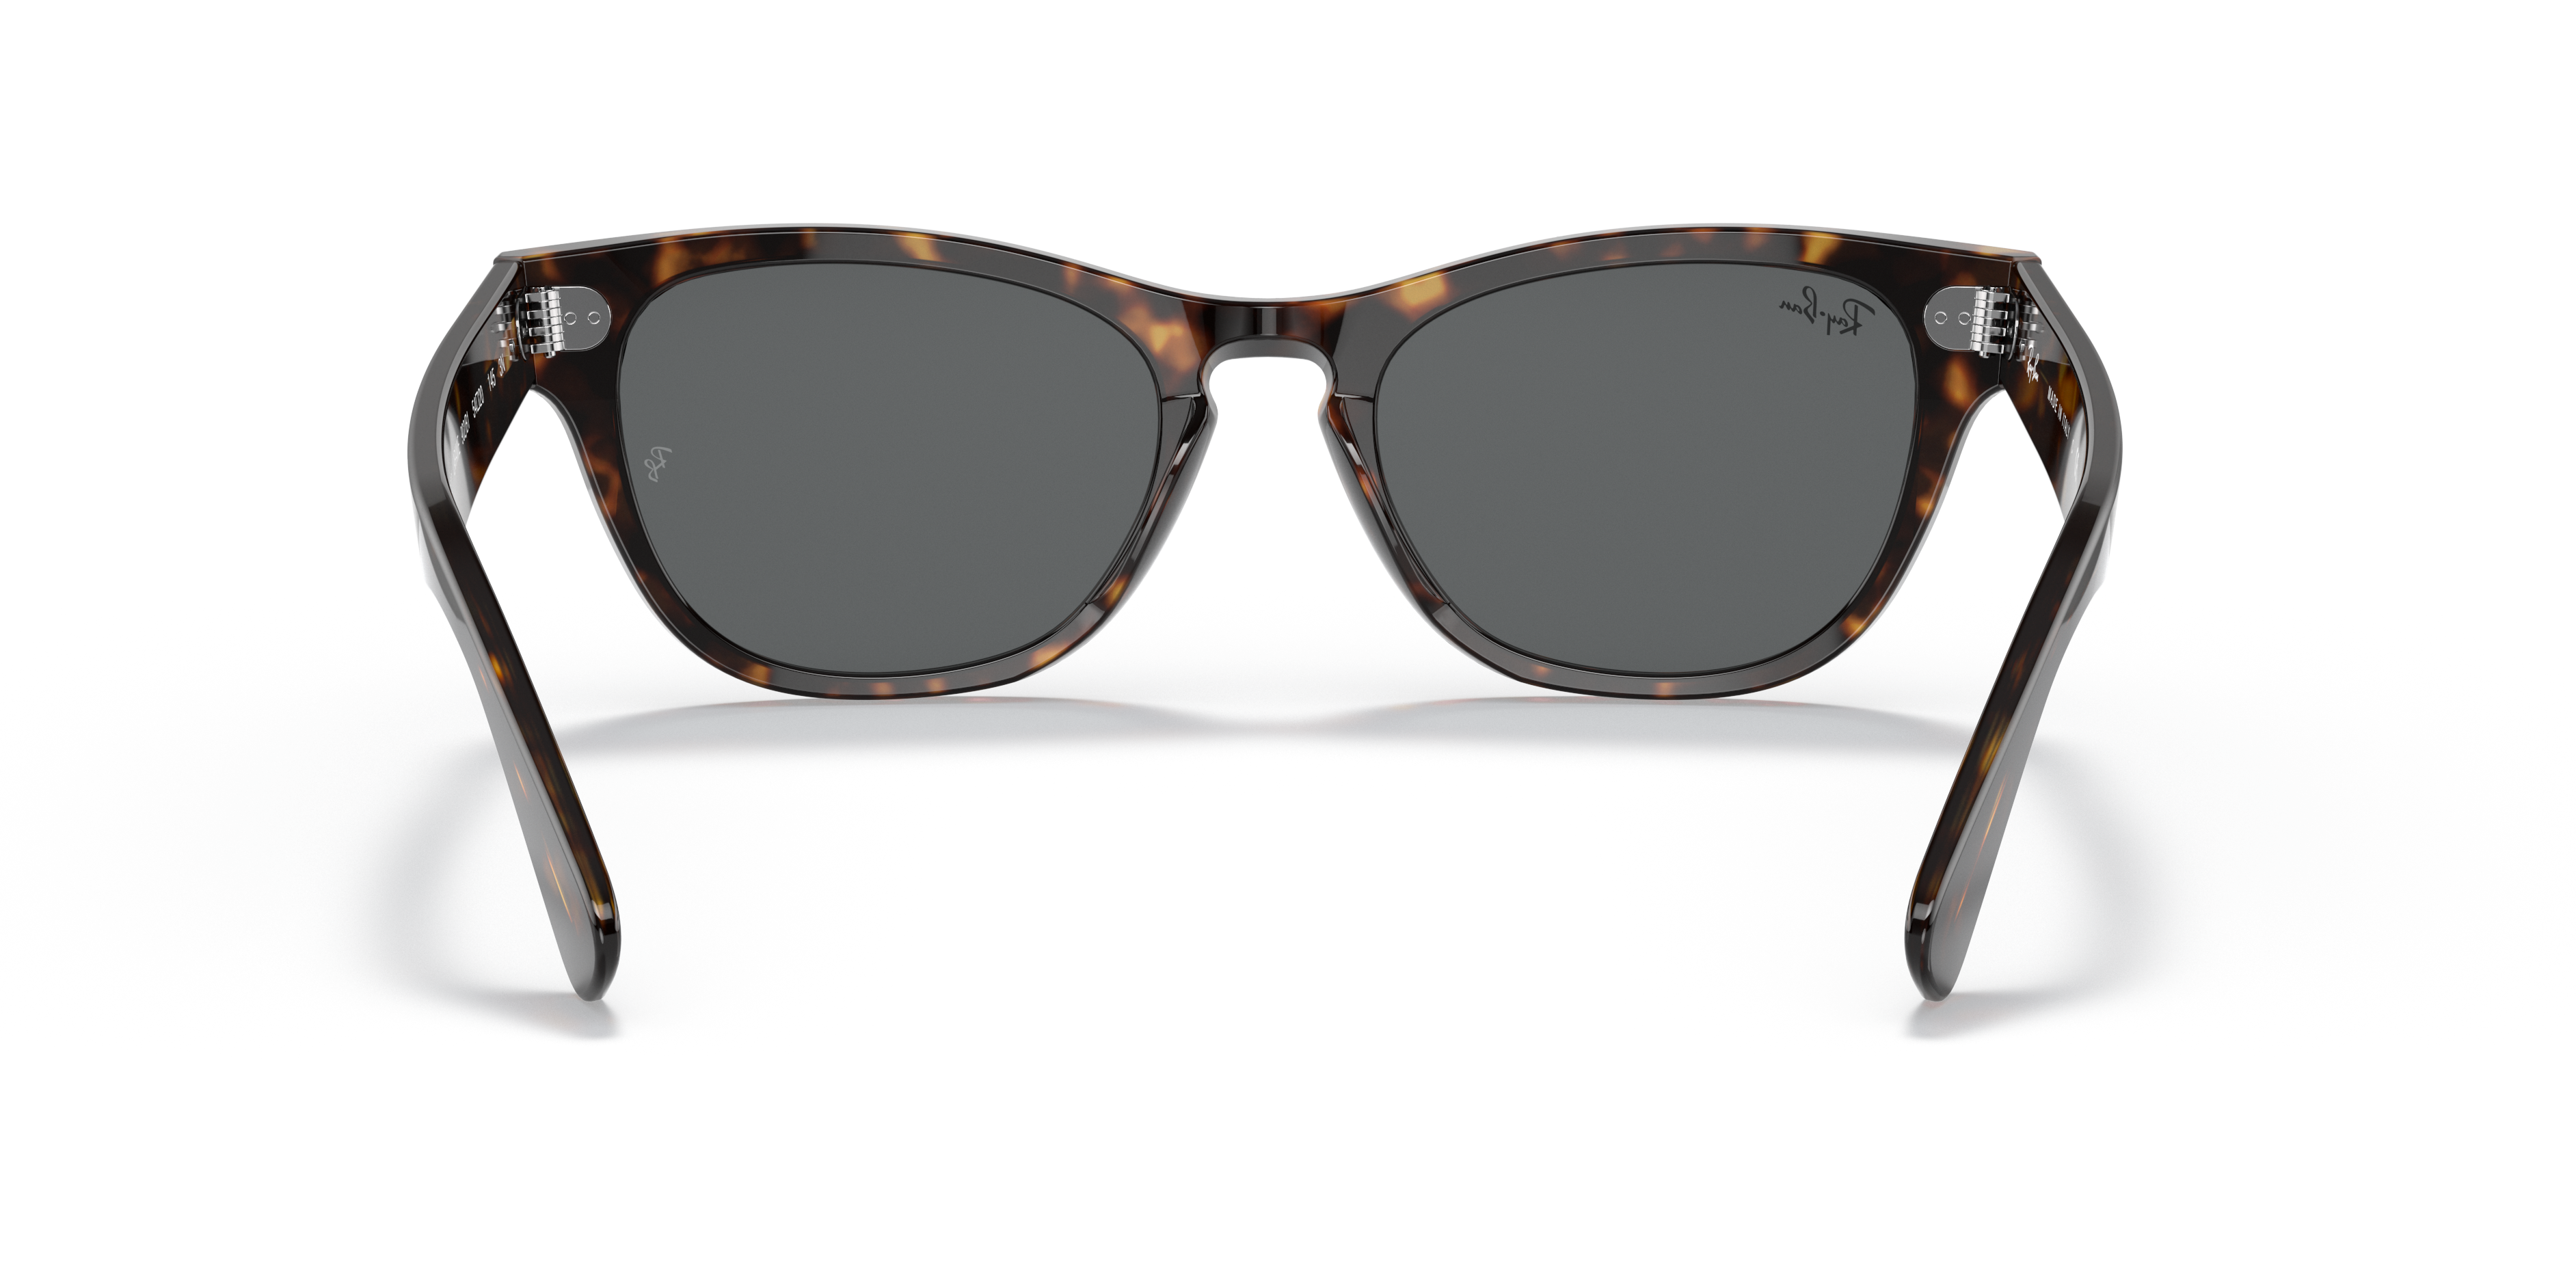 Laramie Sunglasses in Tortoise and Dark Grey | Ray-Ban®